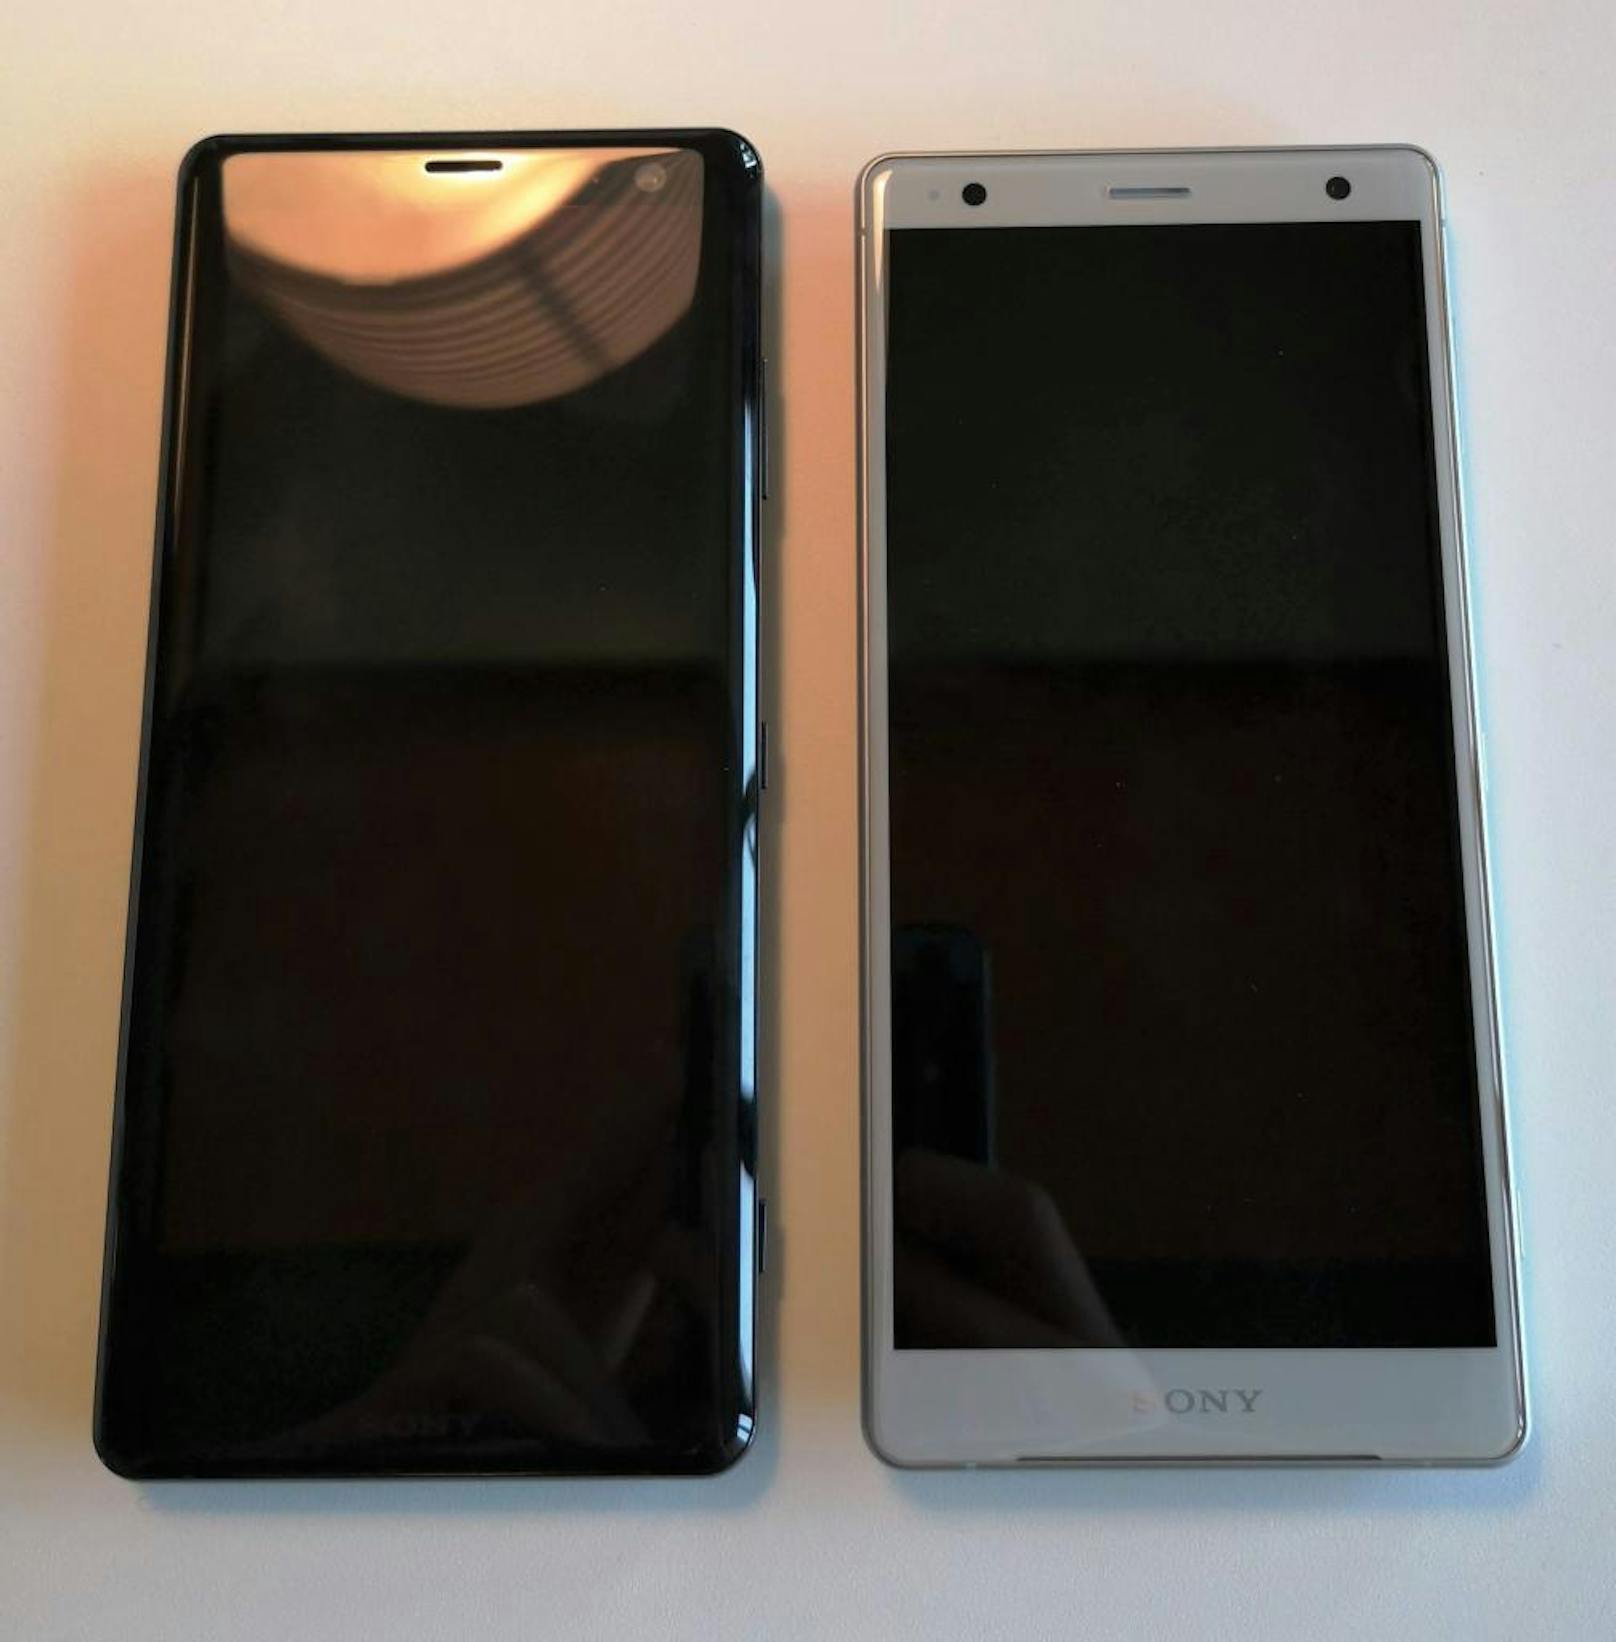 Der Vergleich: Das Xperia XZ3 links, der Vorgänger XZ2 rechts.